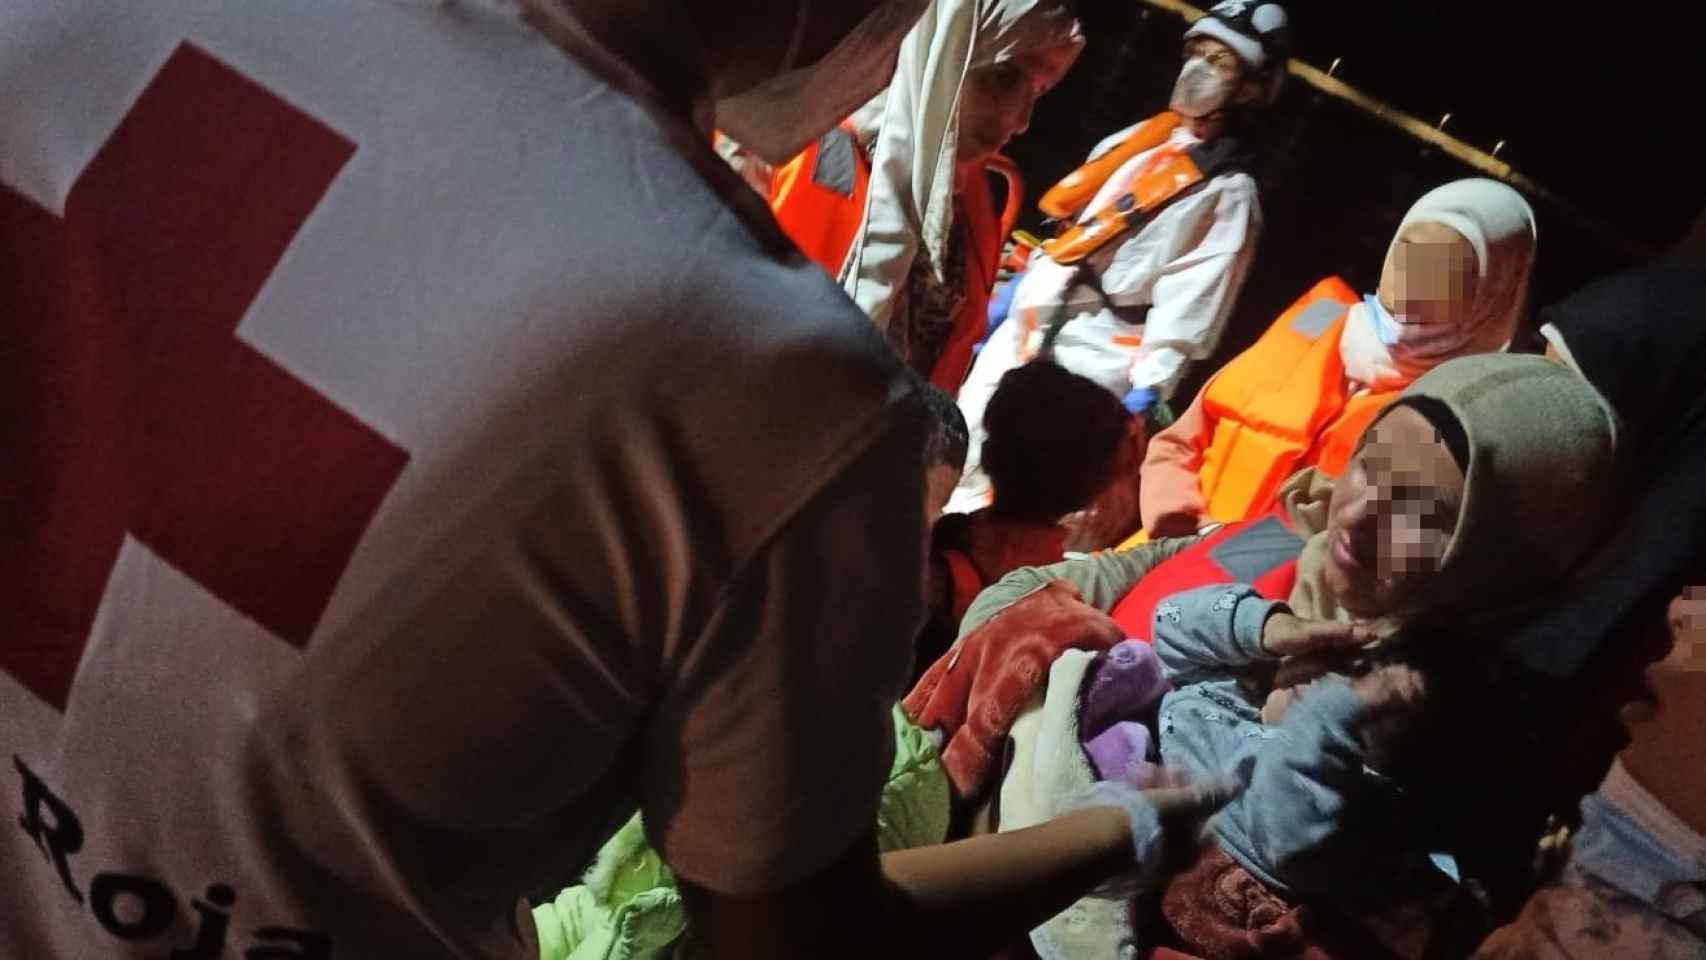 Cruz roja atendiendo a unos migrantes en patera llegados a Alicante, en imagen de archivo.